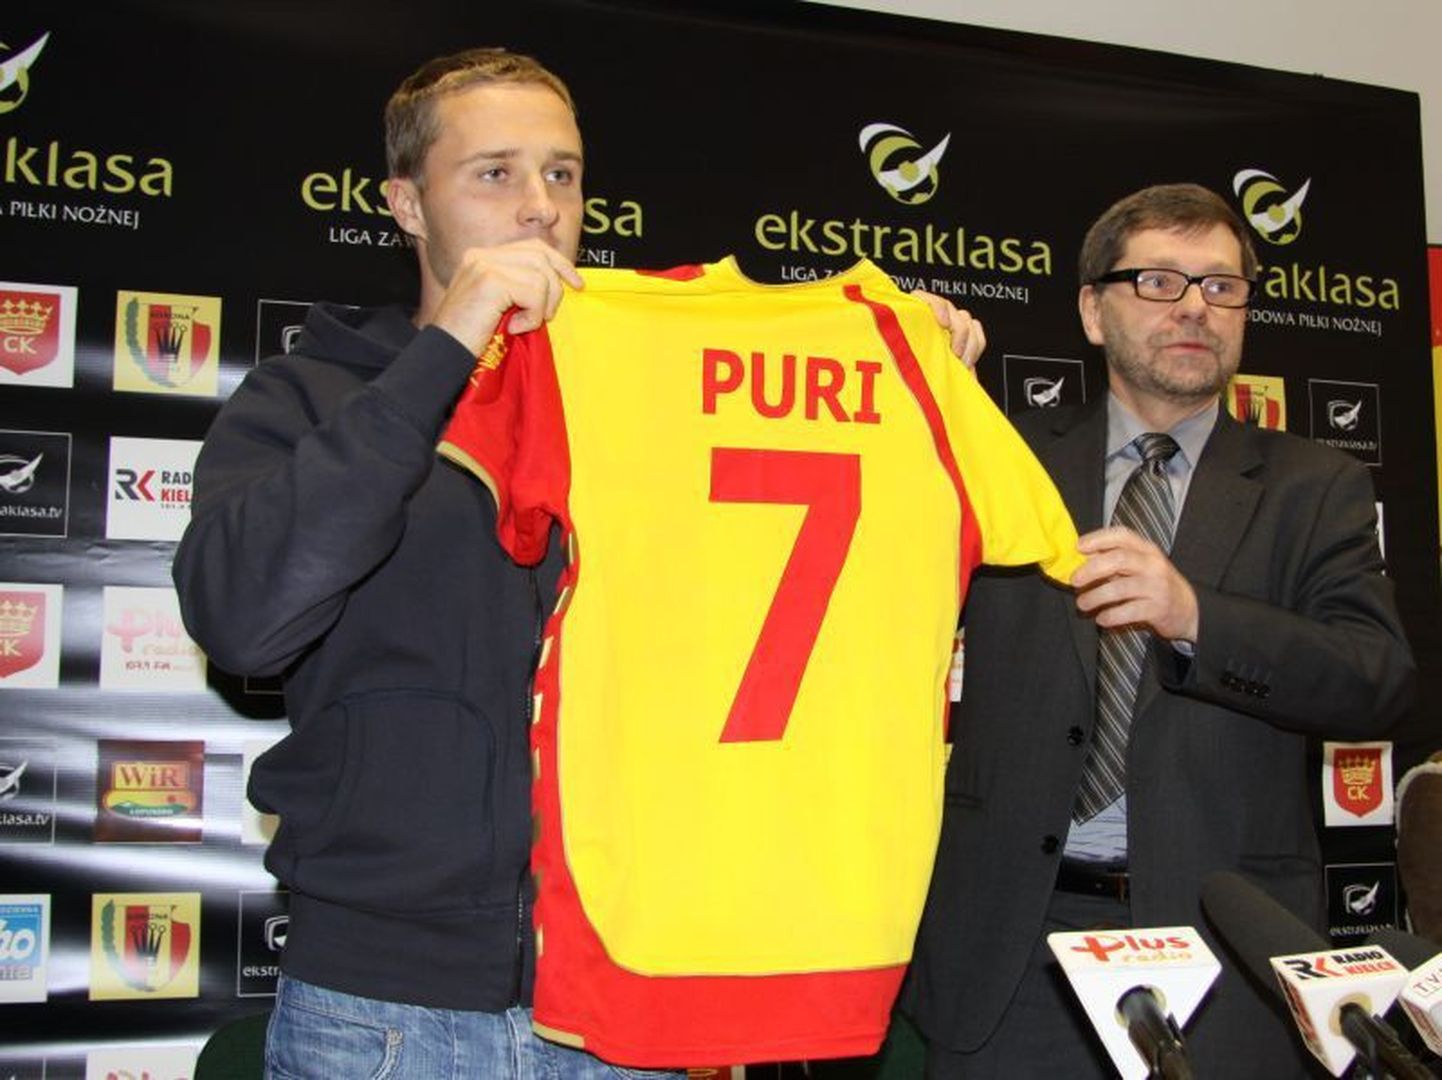 Sander Puri hakkab uues klubis kandma särki numbriga 7.